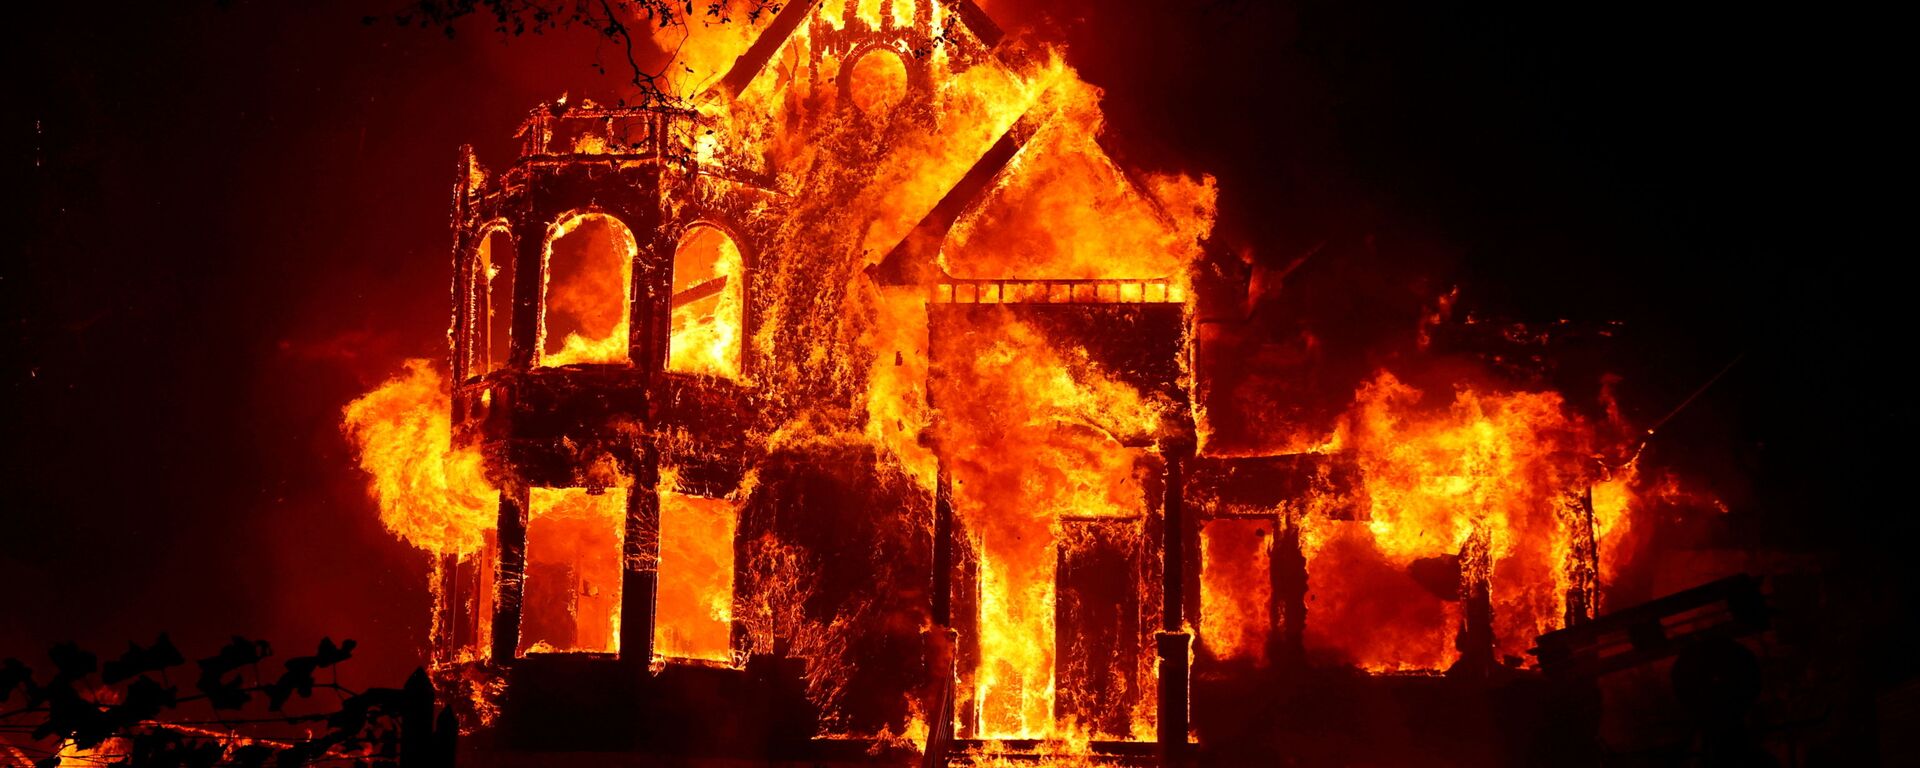 Горящий дом во время природных пожаров в Калифорнии  - Sputnik Қазақстан, 1920, 20.01.2022